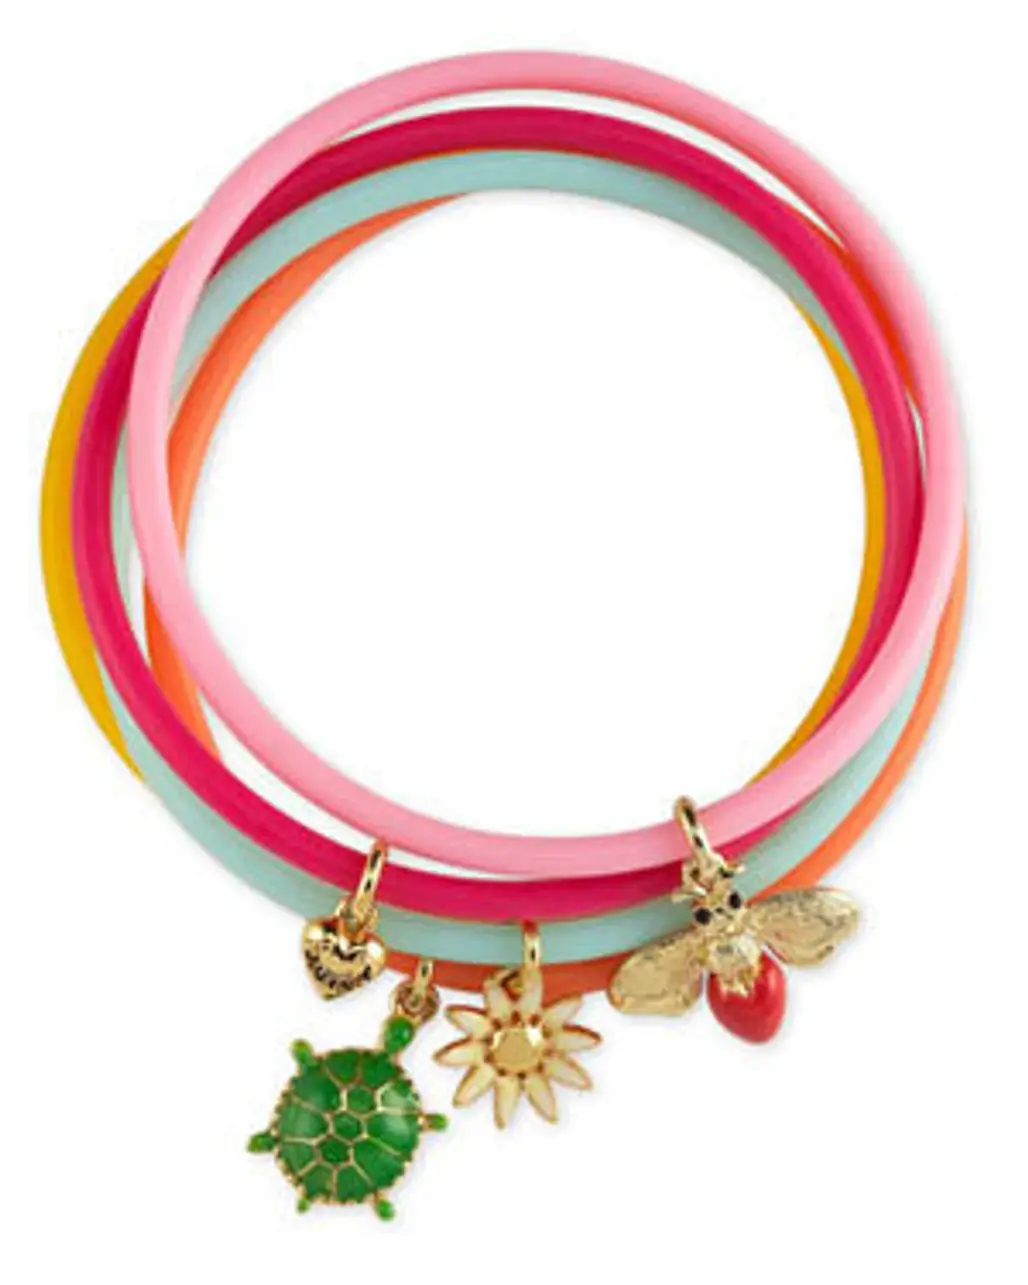 Girls' Jelly Bracelets, Set of Five